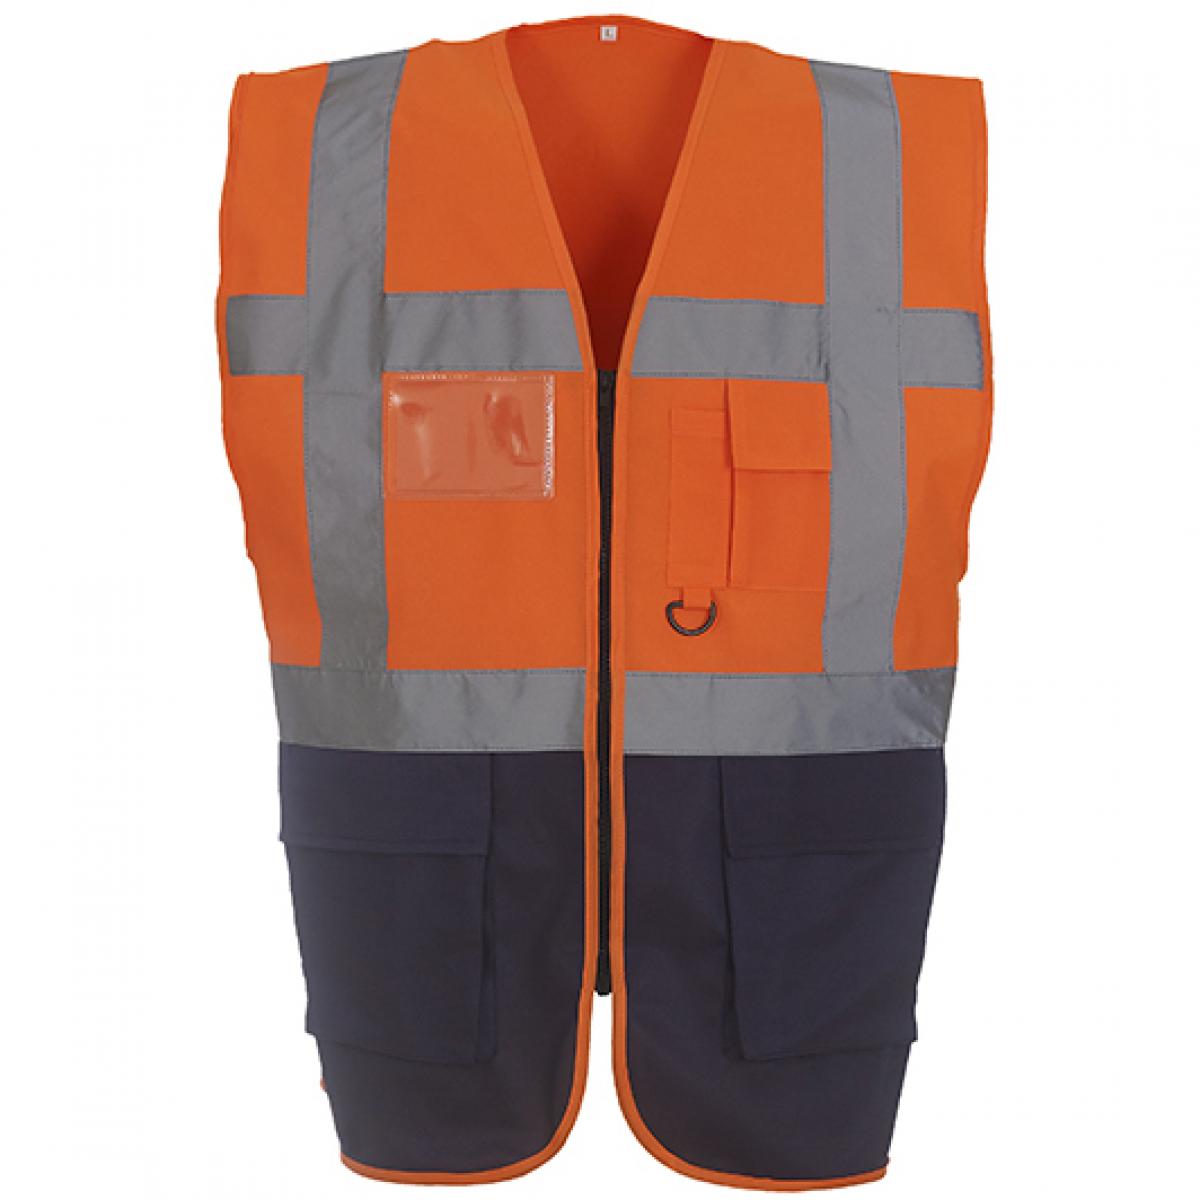 Hersteller: YOKO Herstellernummer: HVW801 Artikelbezeichnung: Herren Multi-Functional Executive Waistcoat Farbe: Hi-Vis Orange/Navy